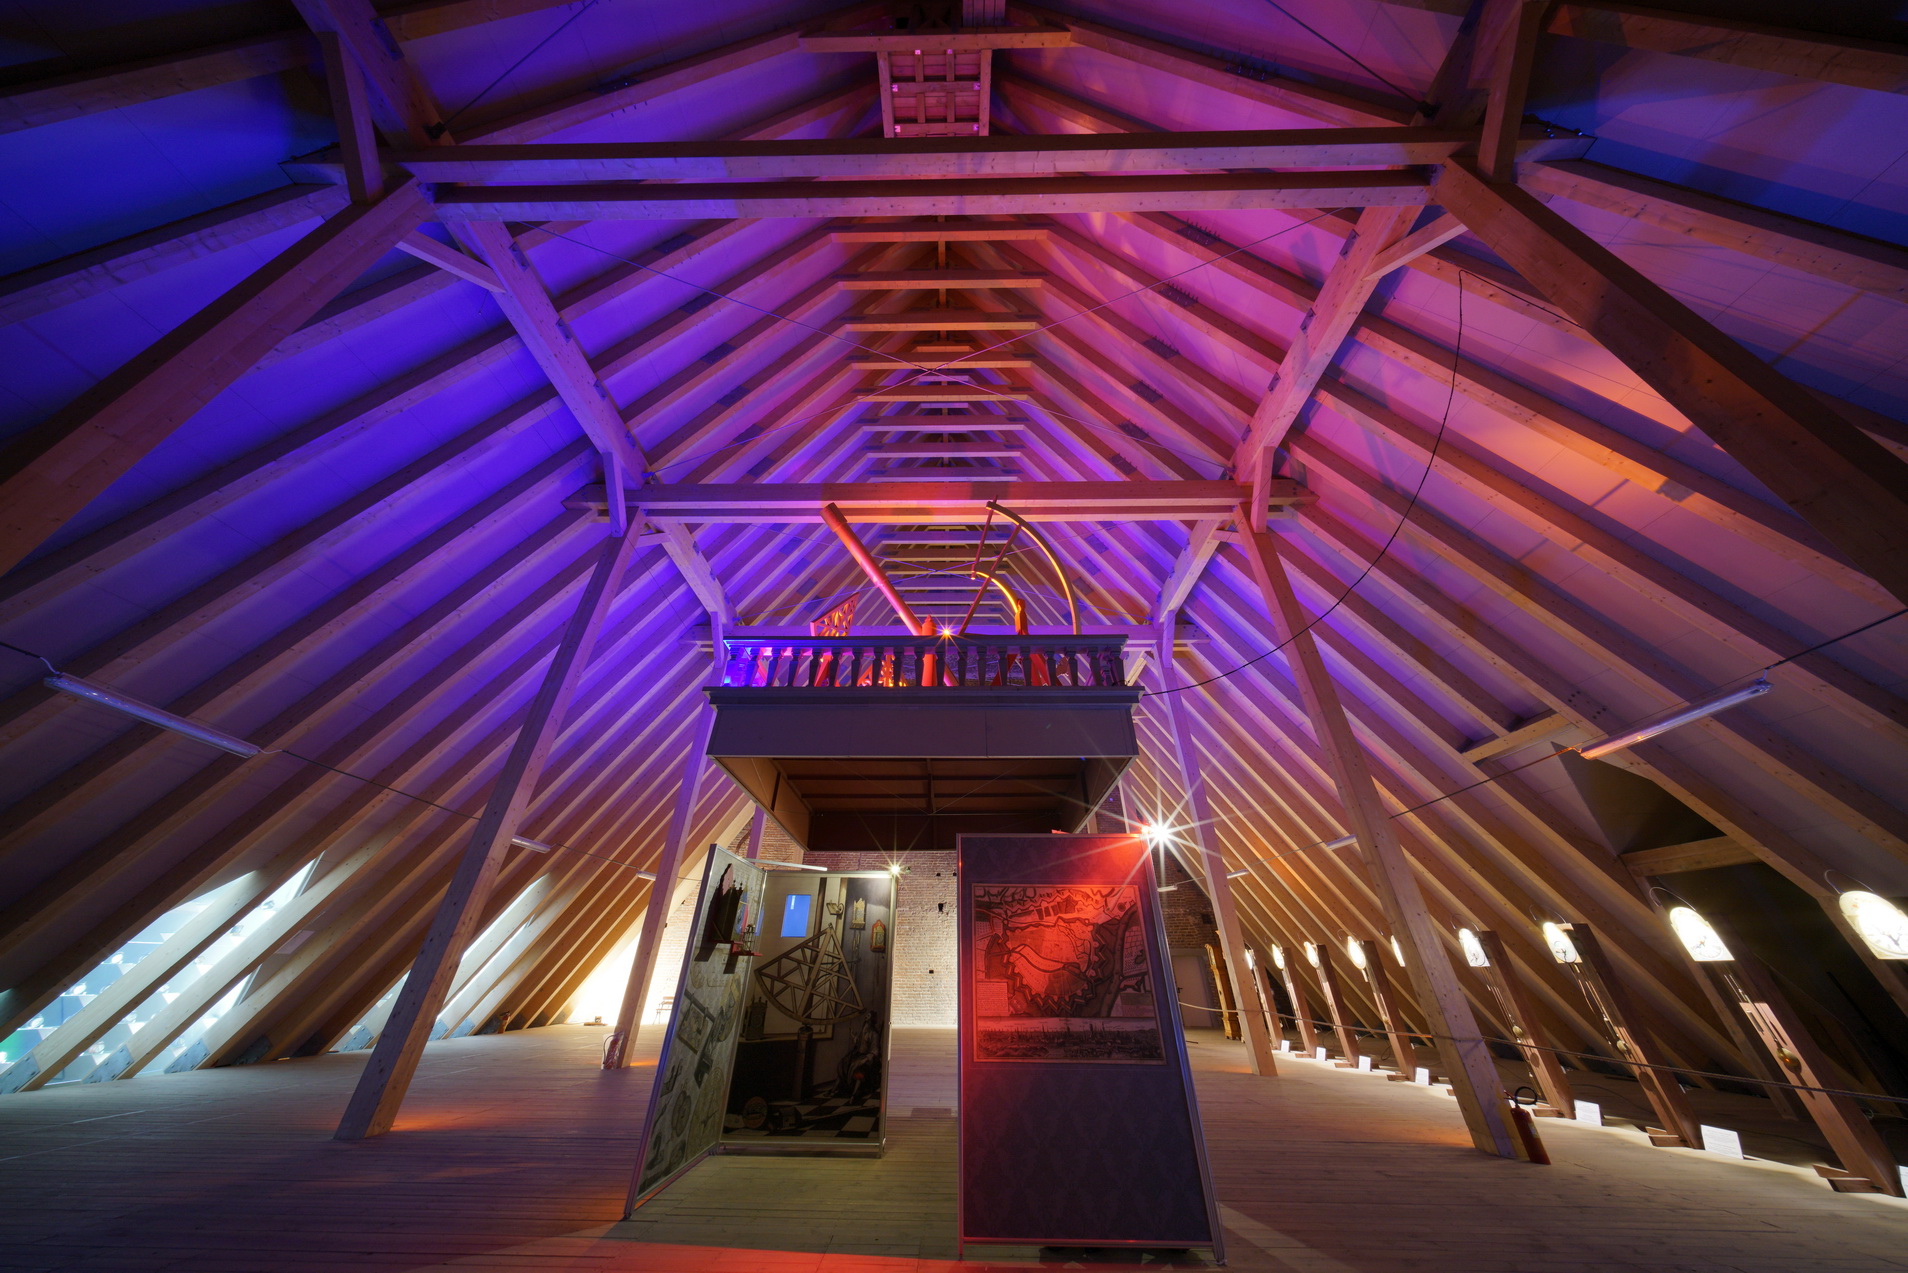 Wystawa na poddaszu. Makieta obserwatorium Jana Heweliusza. Widok z dołu, na drewniany strop, podświetlony na różowo i fioletowo.